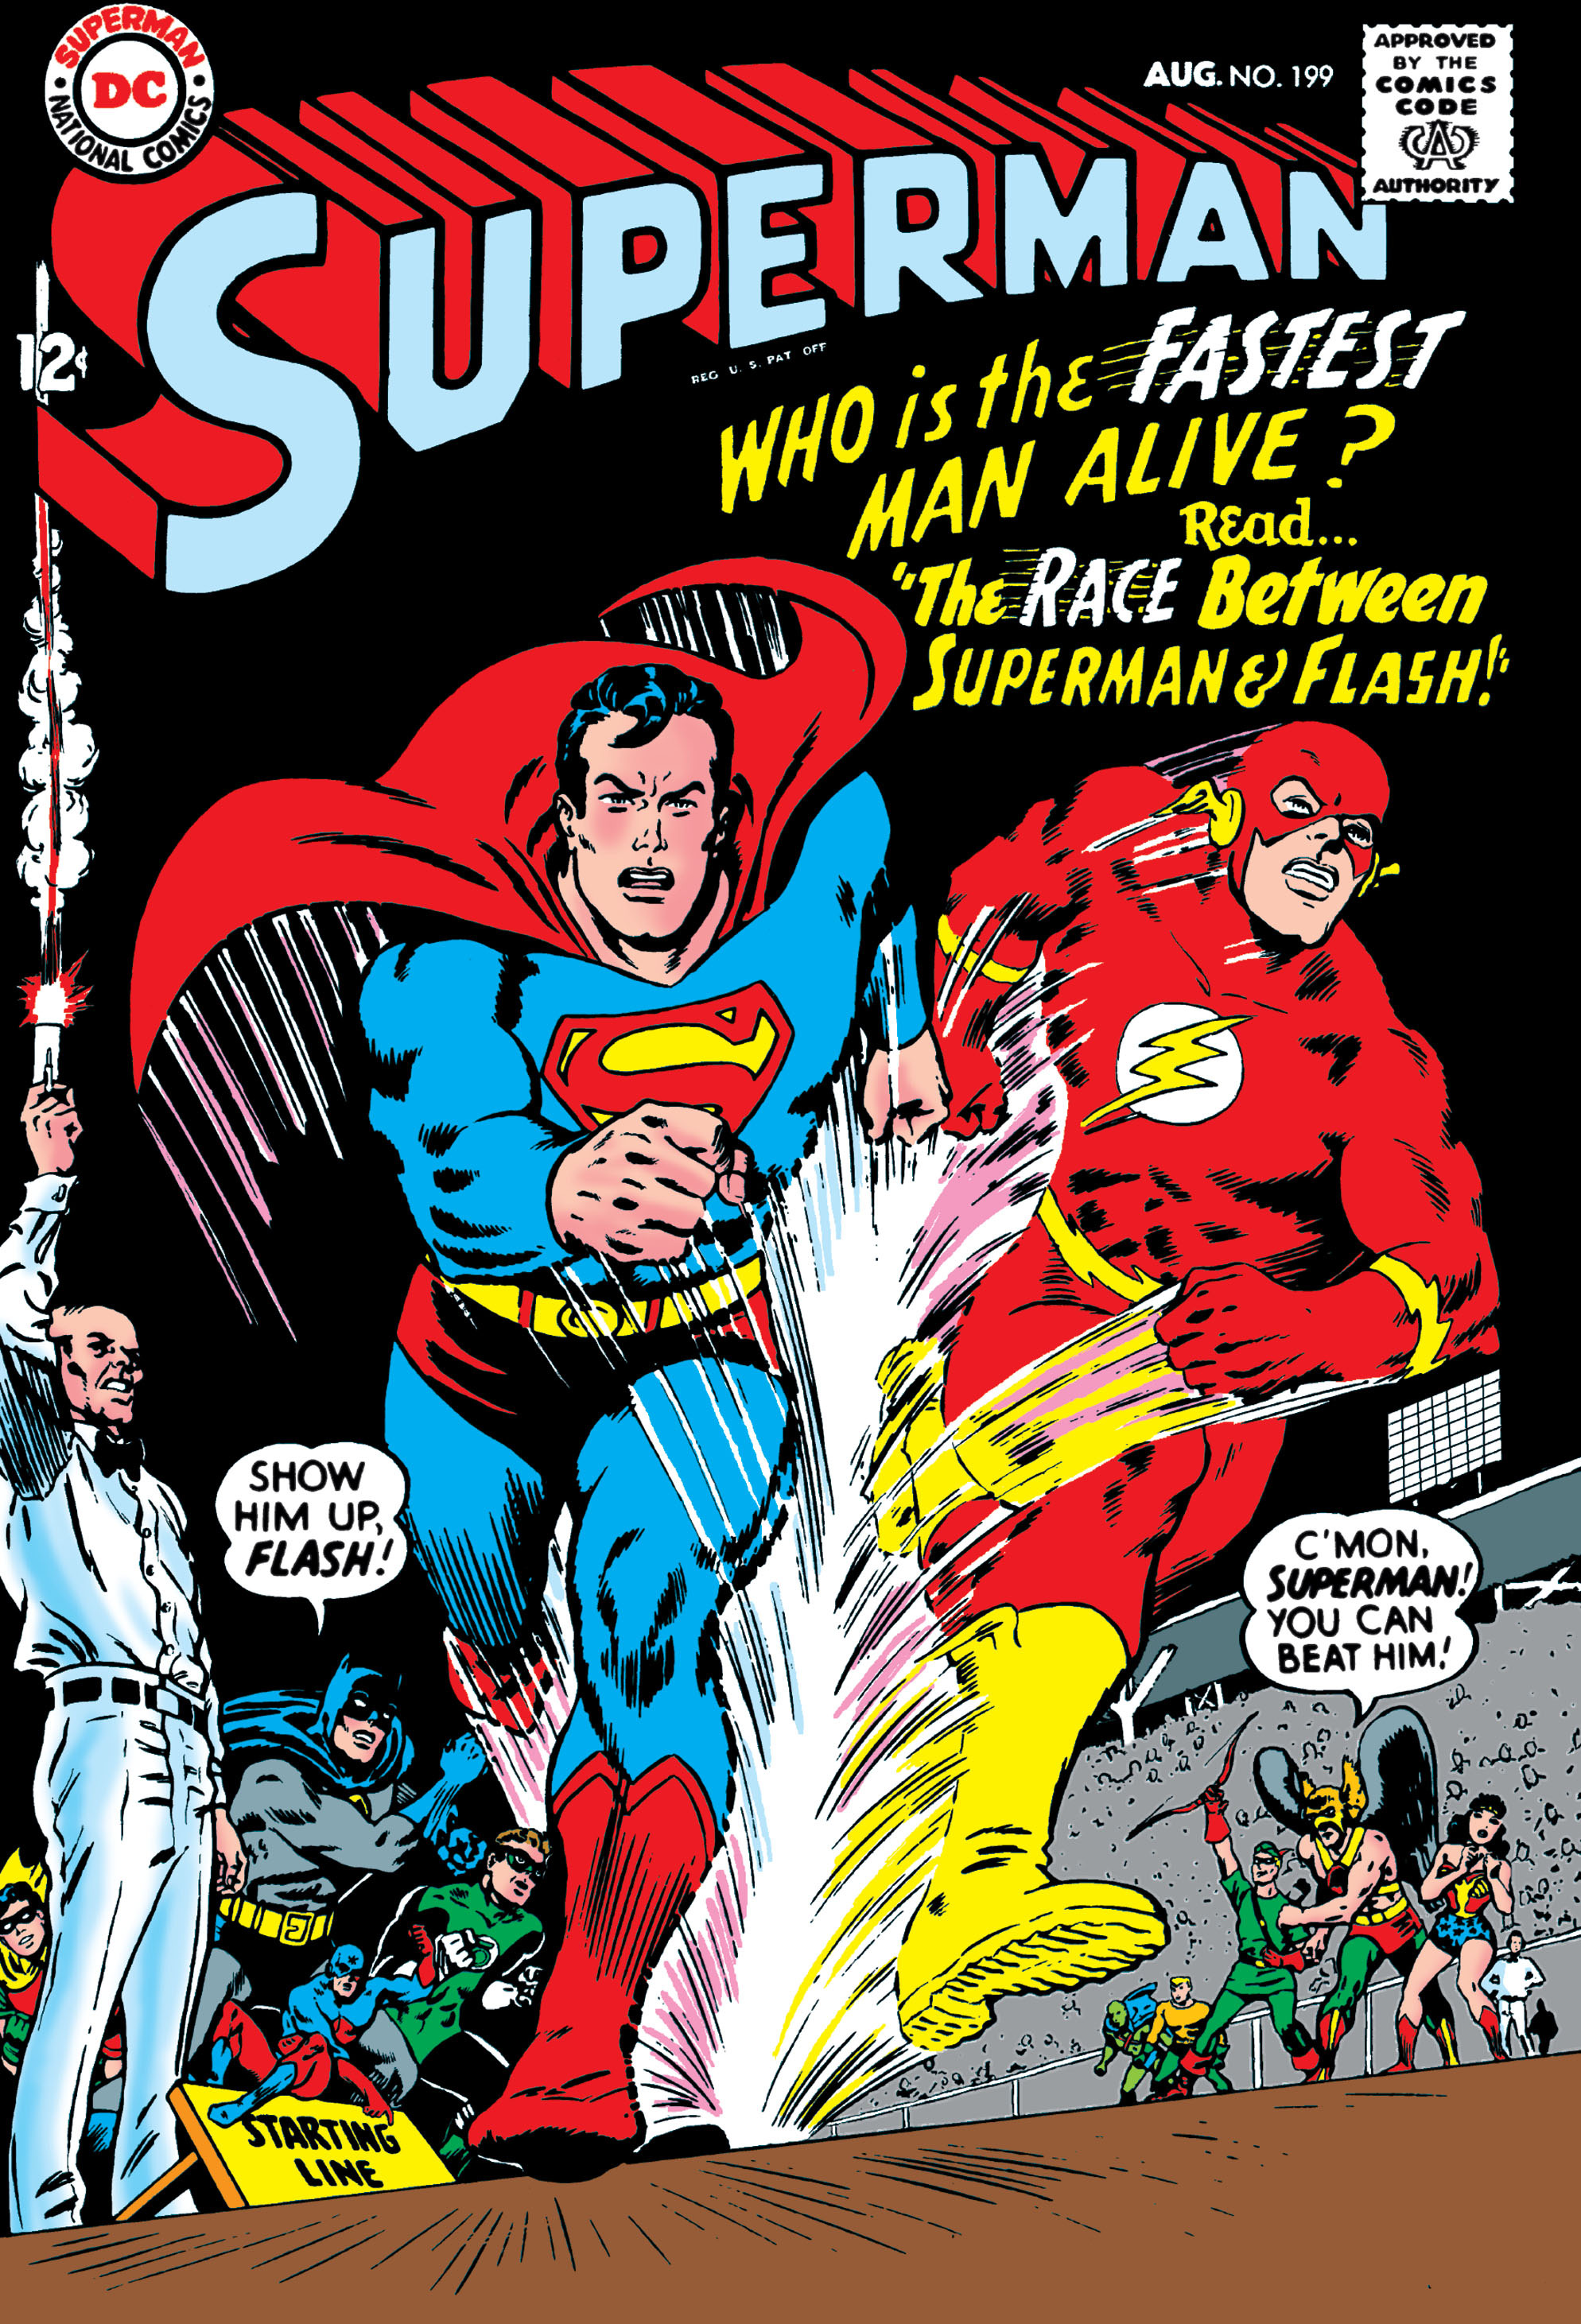 Image result for superman gambling comic book